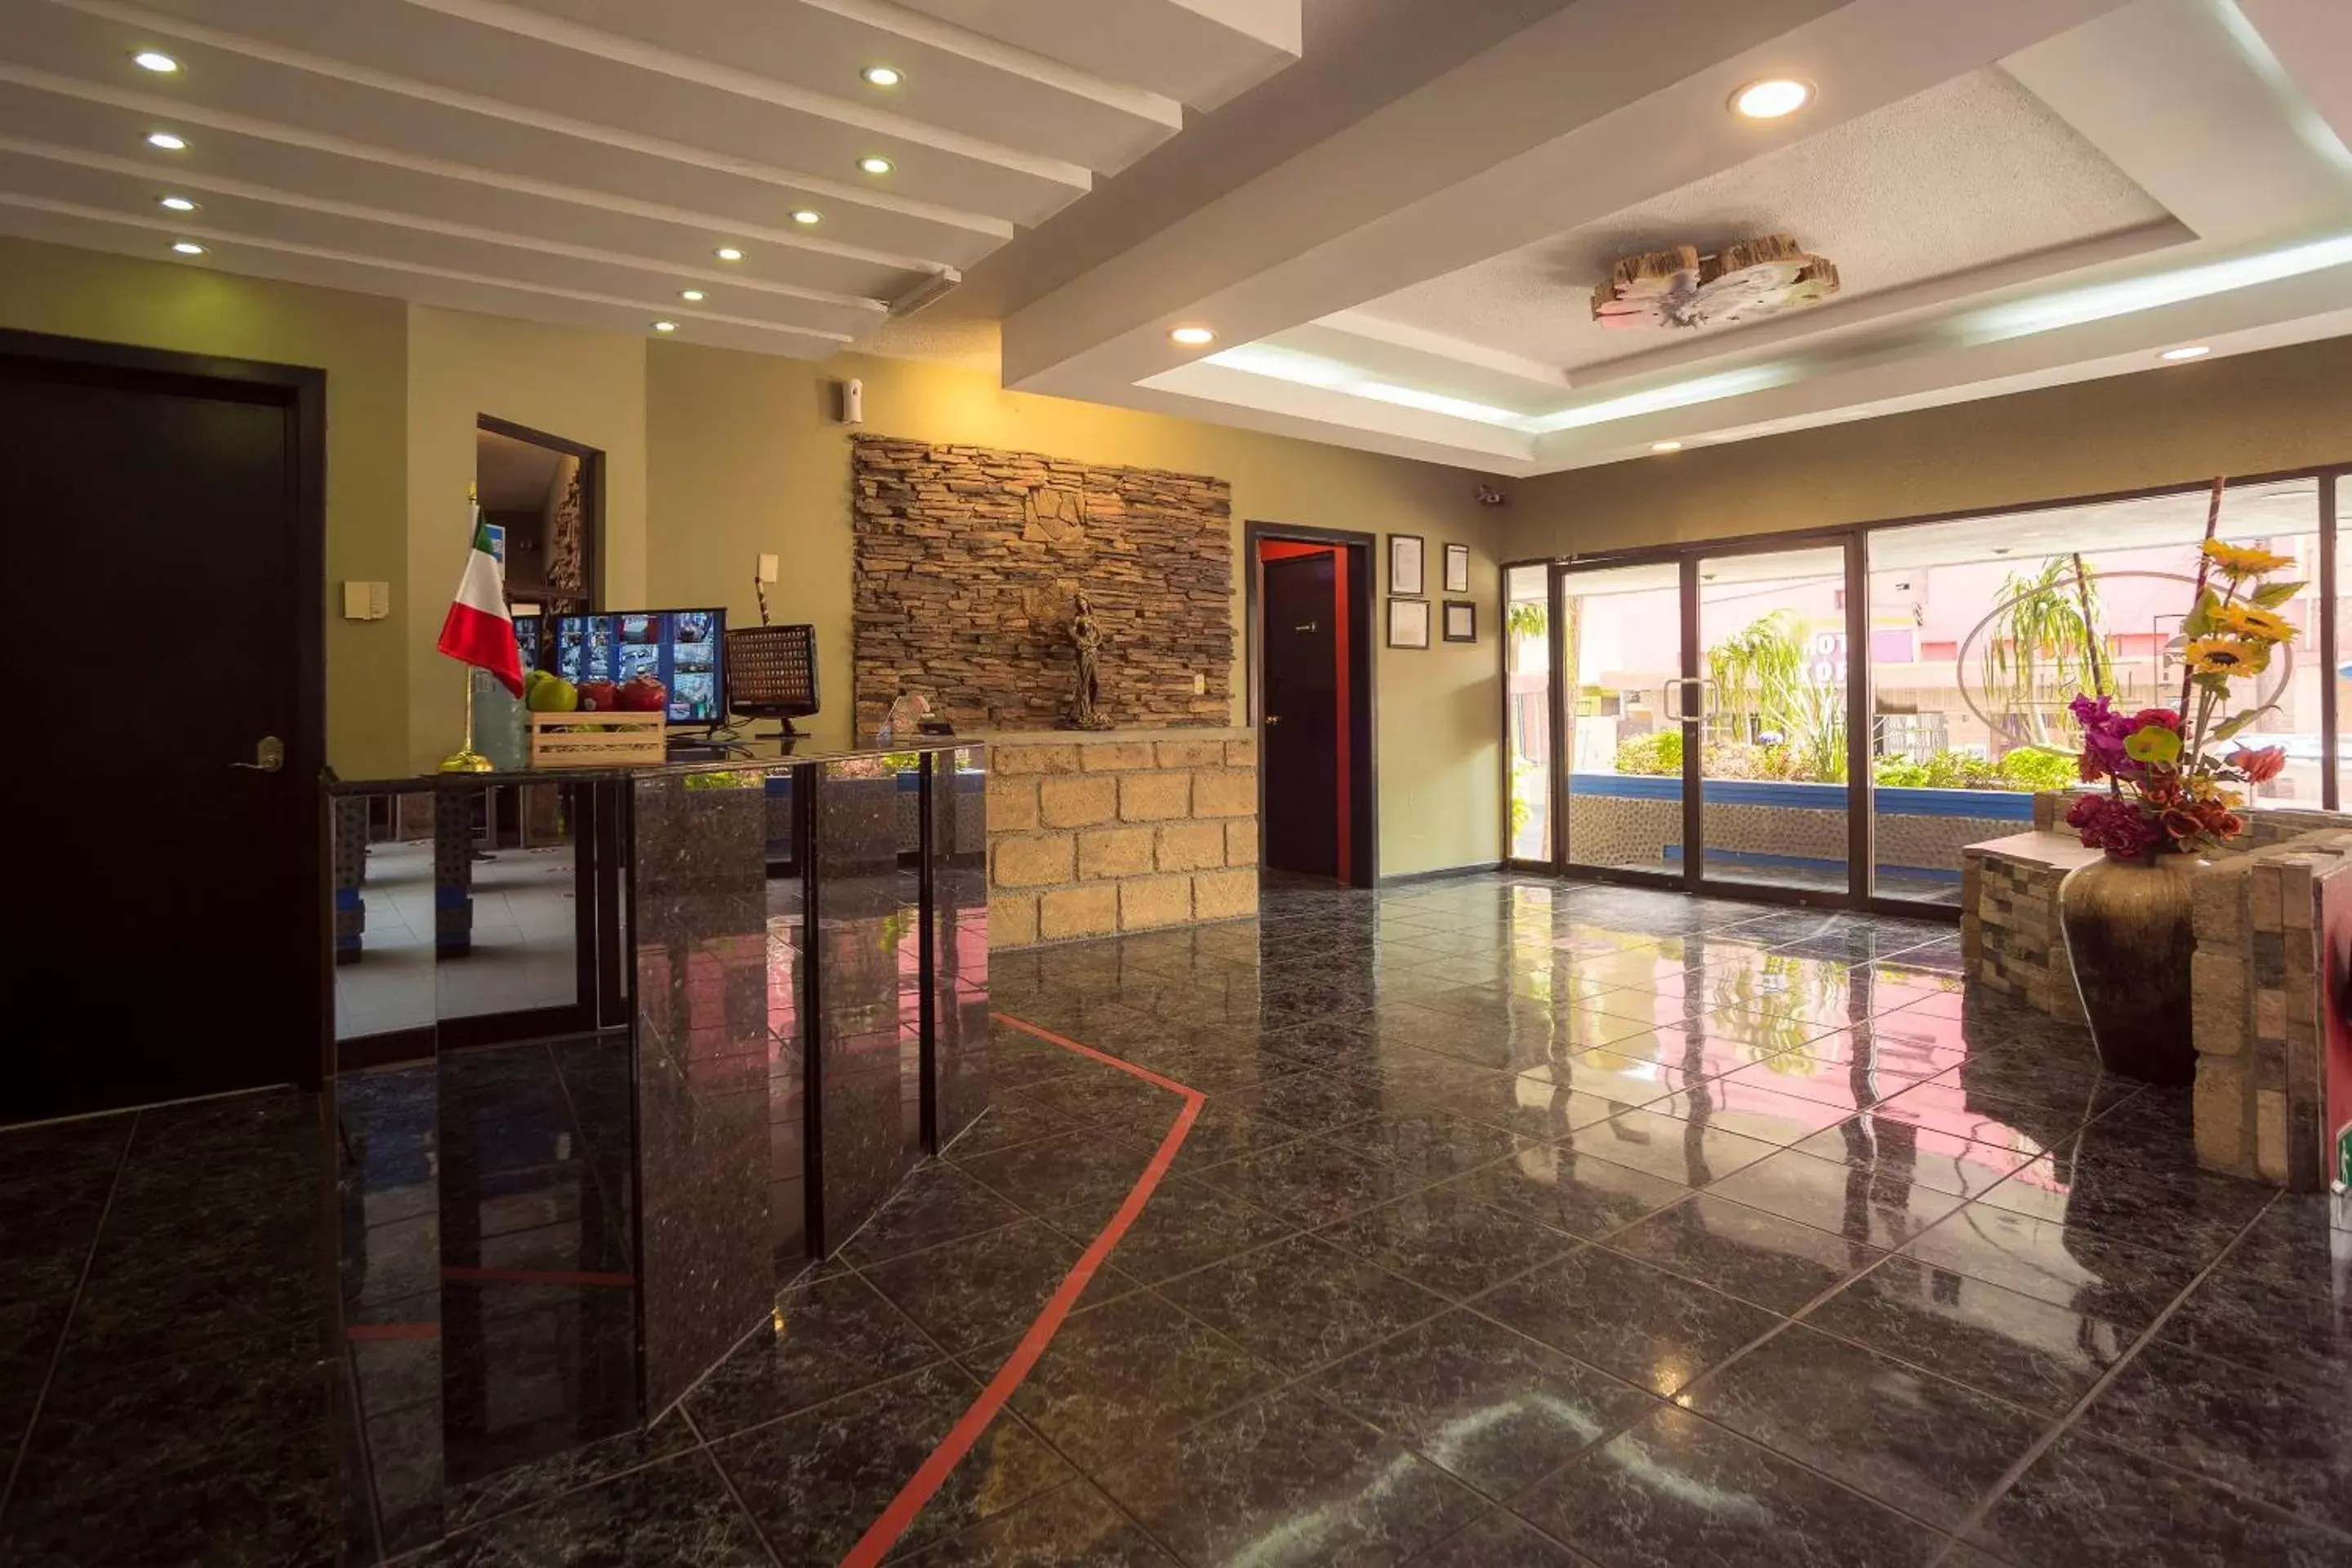 Lobby or reception, Lobby/Reception in CAPITAL O Hotel La Silla